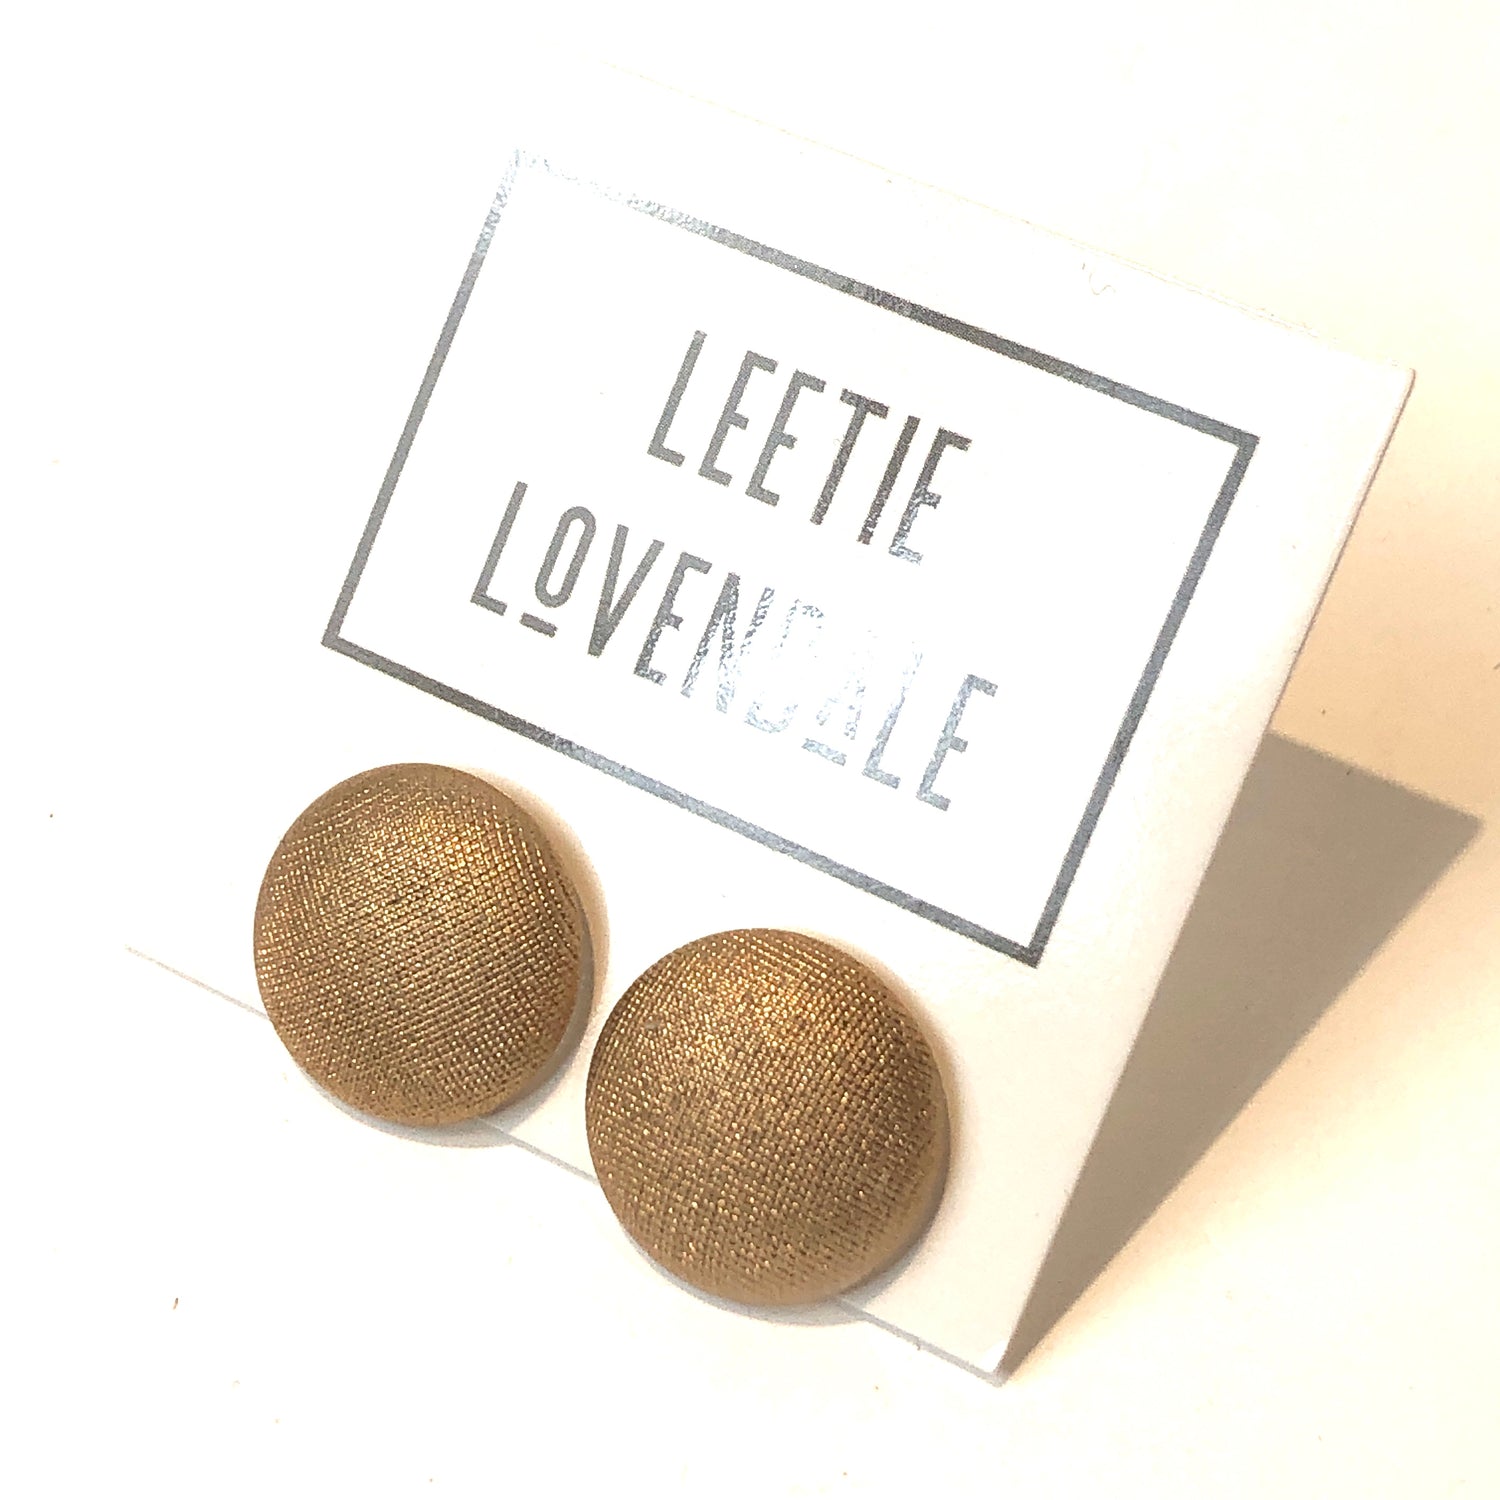 leetie lovendale gold earrings